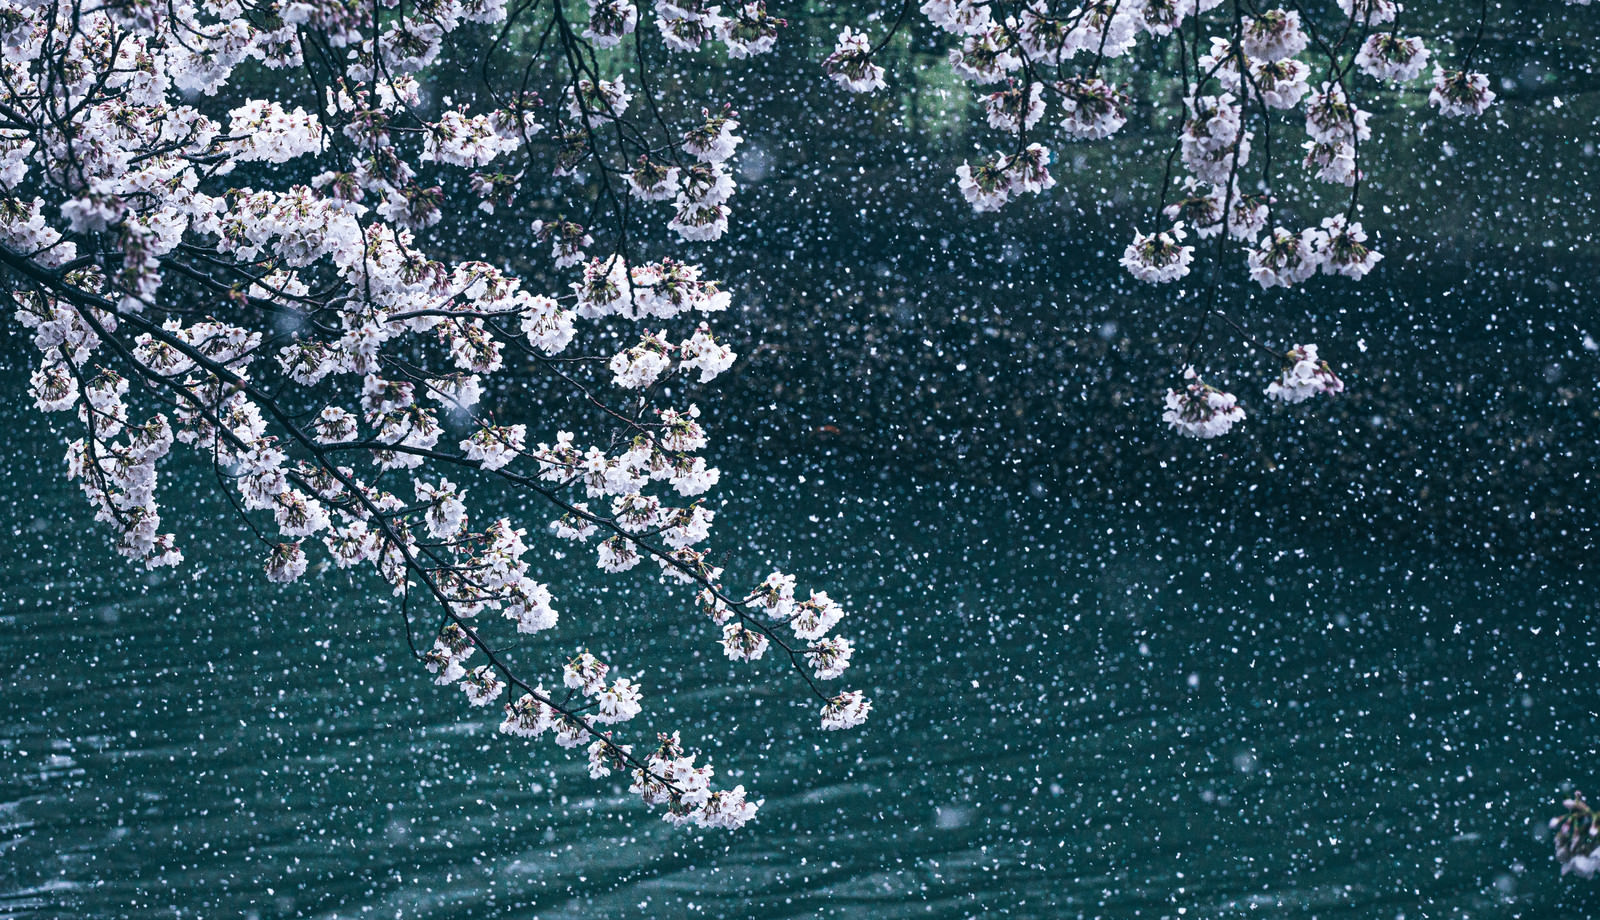 満開に咲く桜と降雪が桜吹雪のようの写真 画像 フリー素材 ぱくたそ